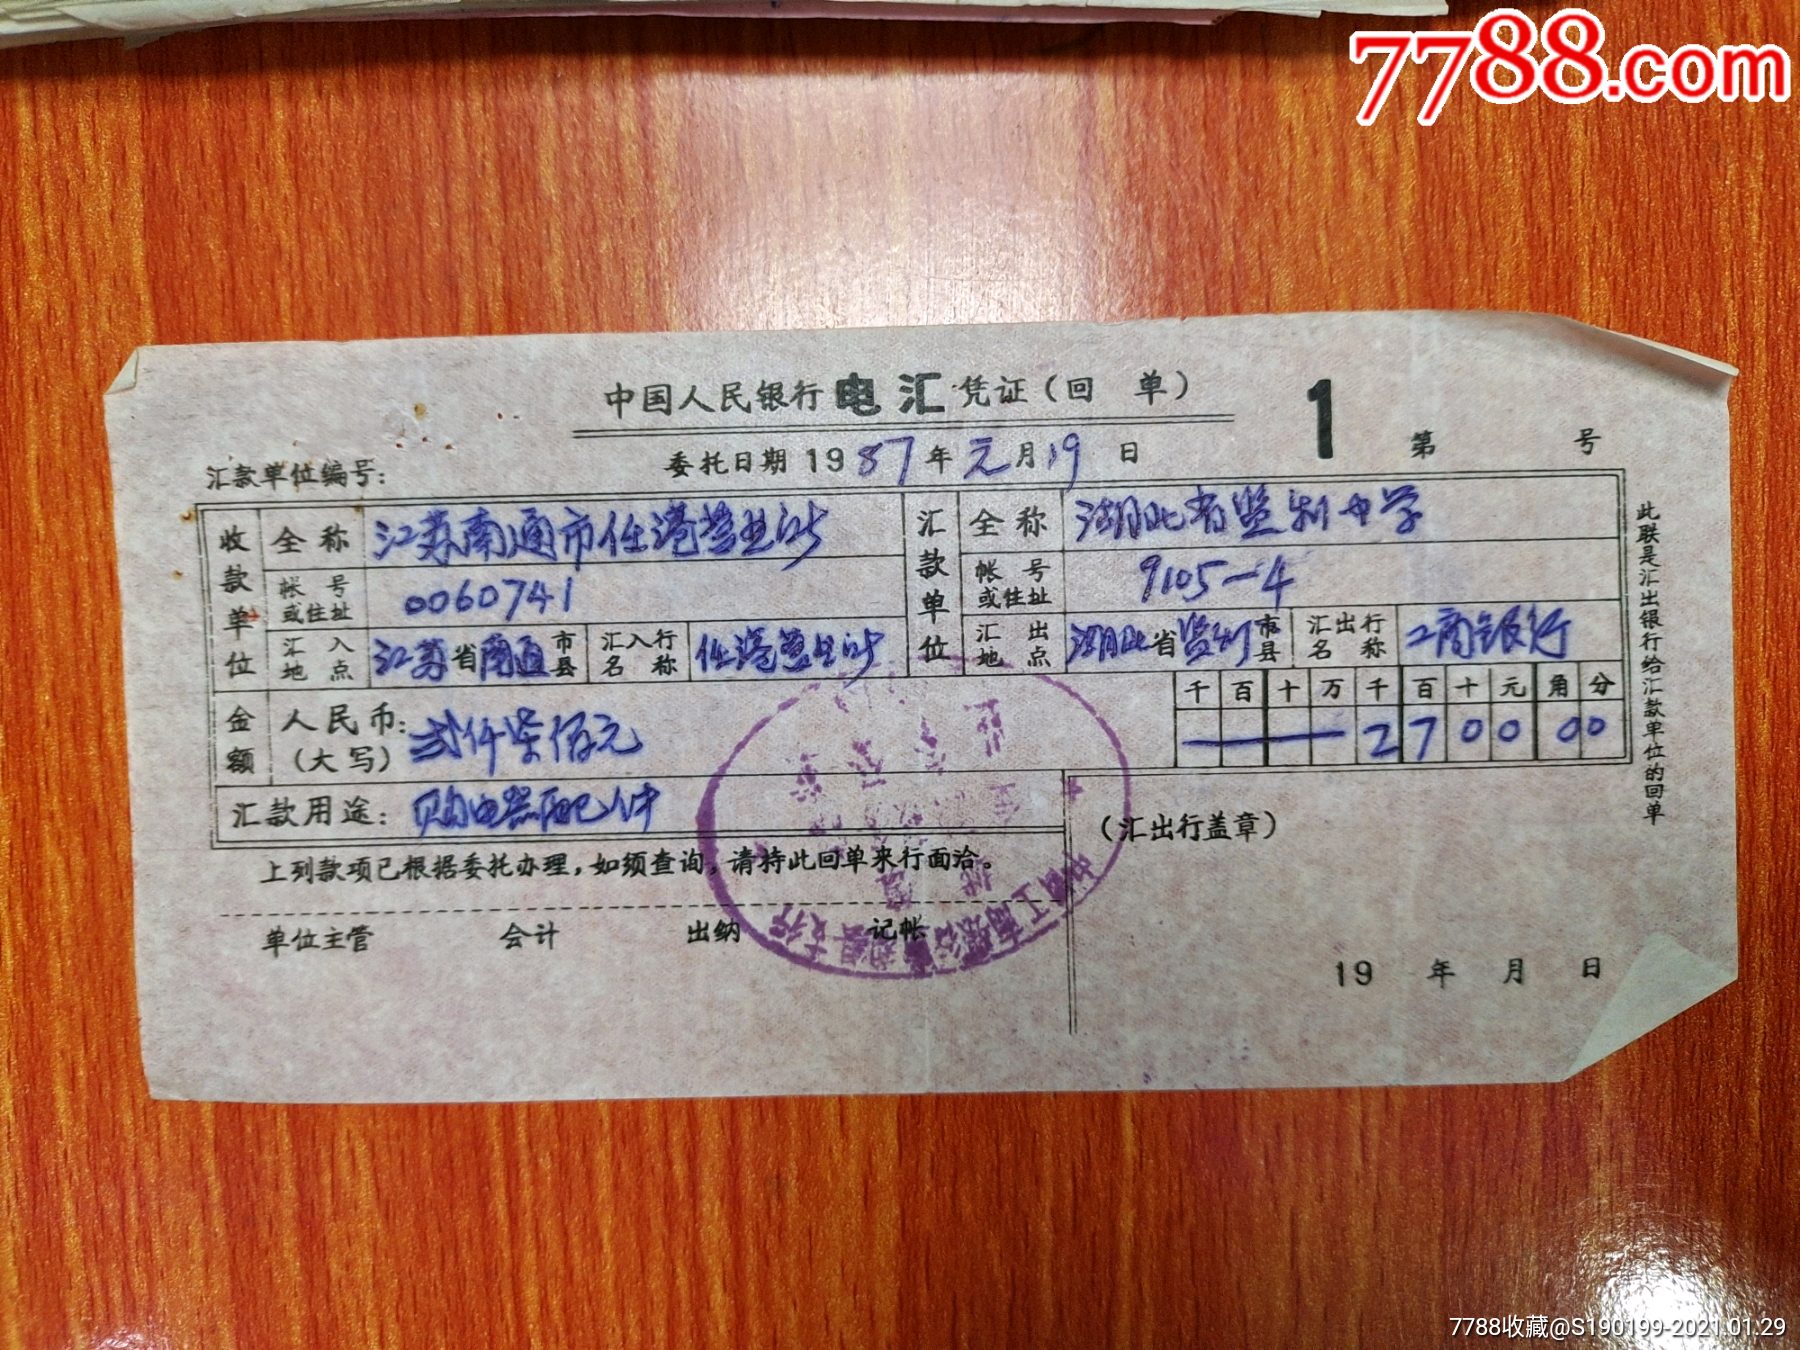 中国人民银行票电汇凭证(江苏省南通市任港营业所)